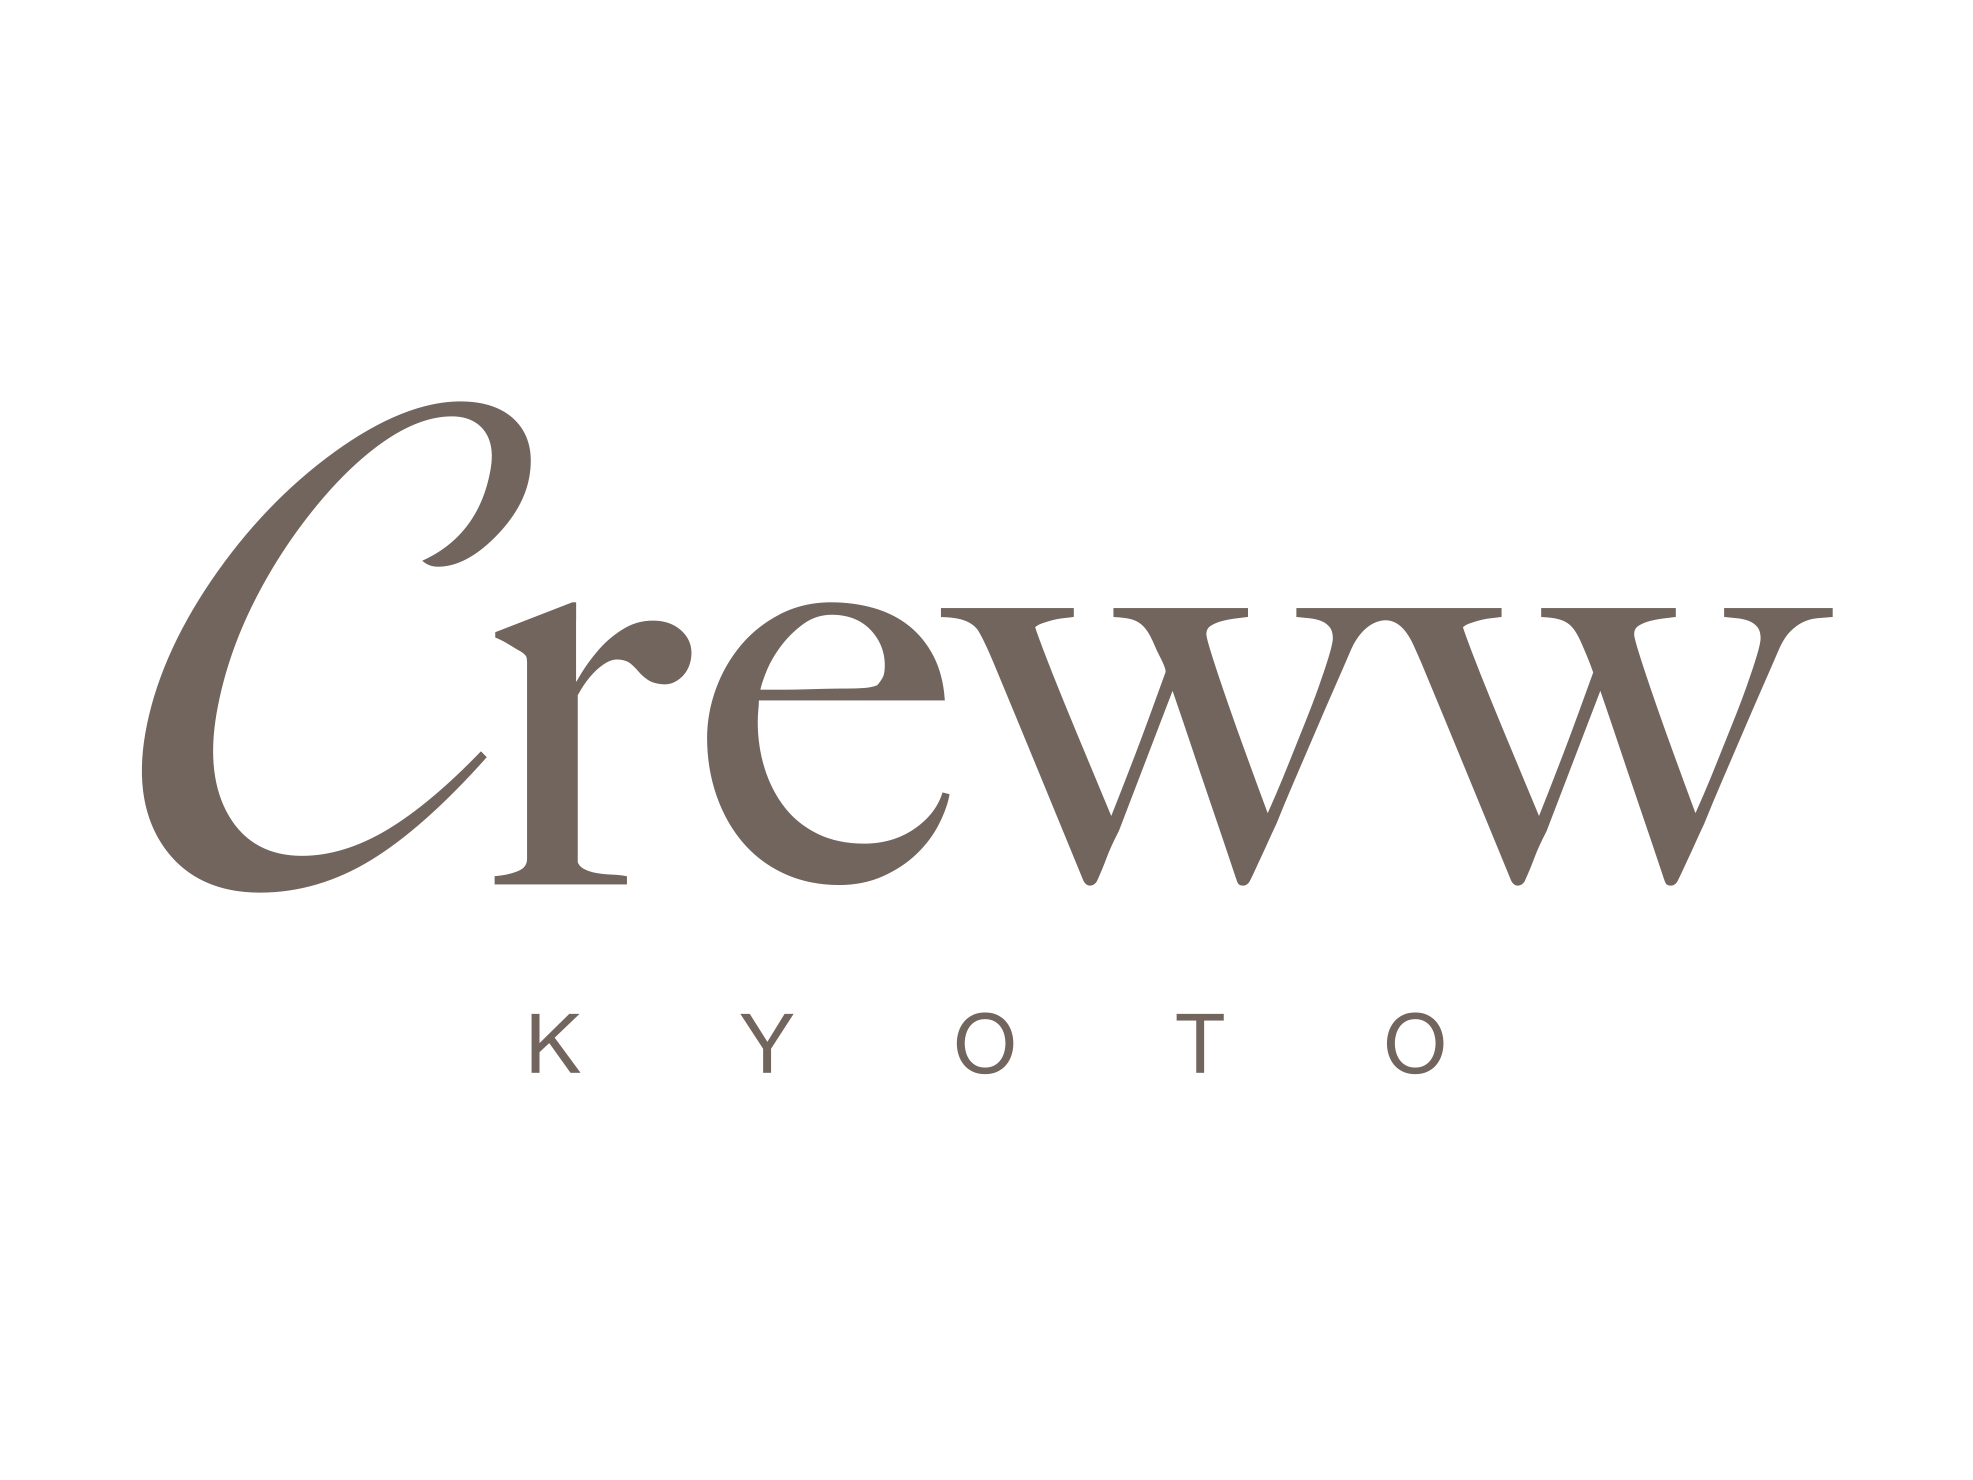 Creww KYOTO(クルー キョウト)